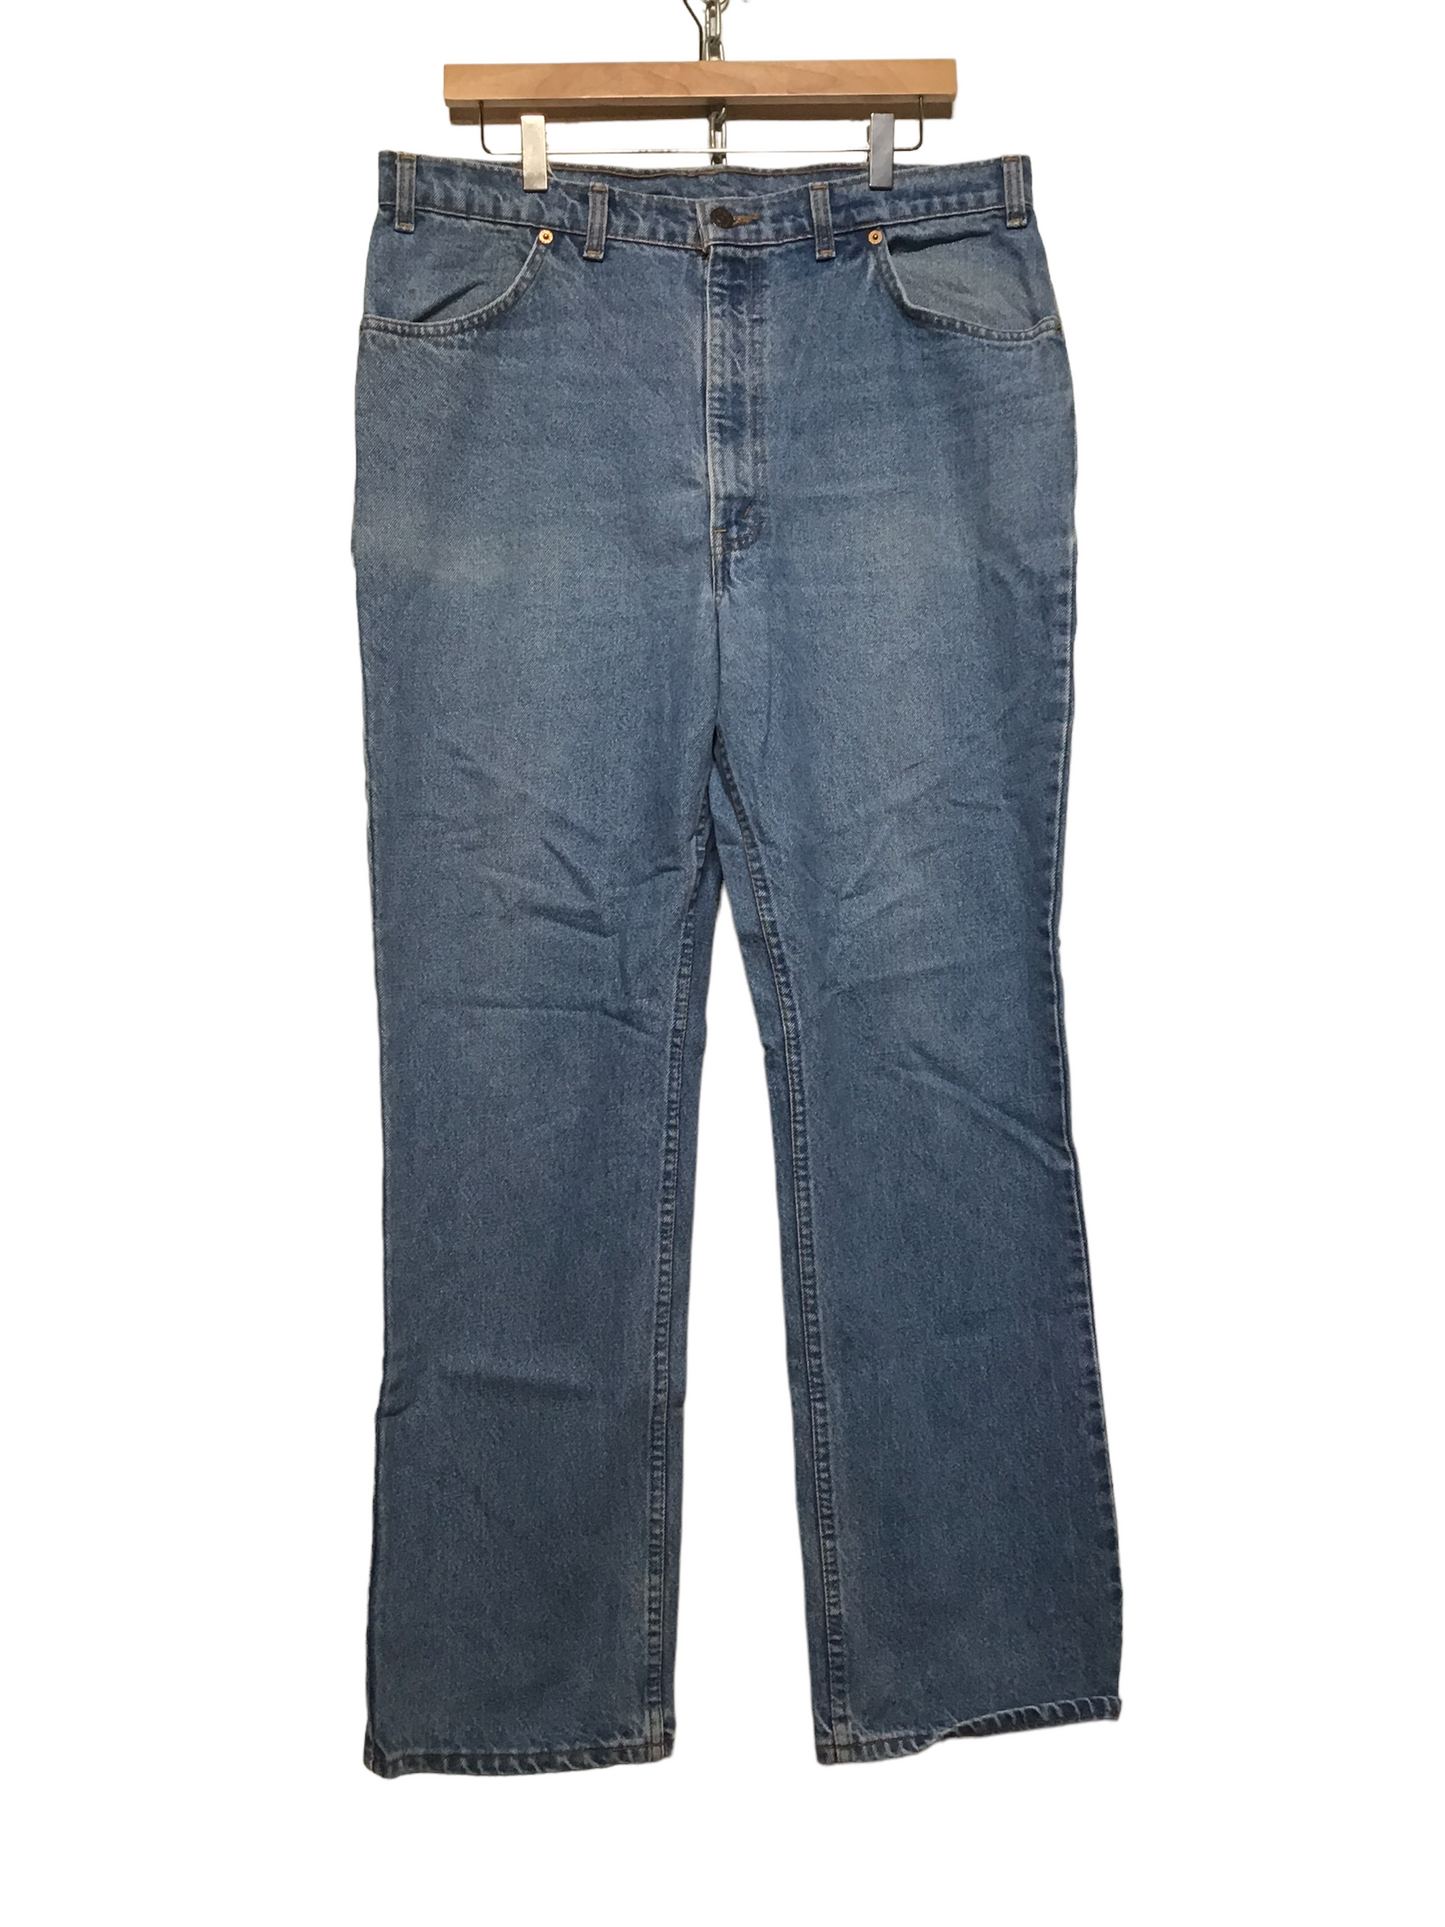 Levi 619 Jeans (38X32)